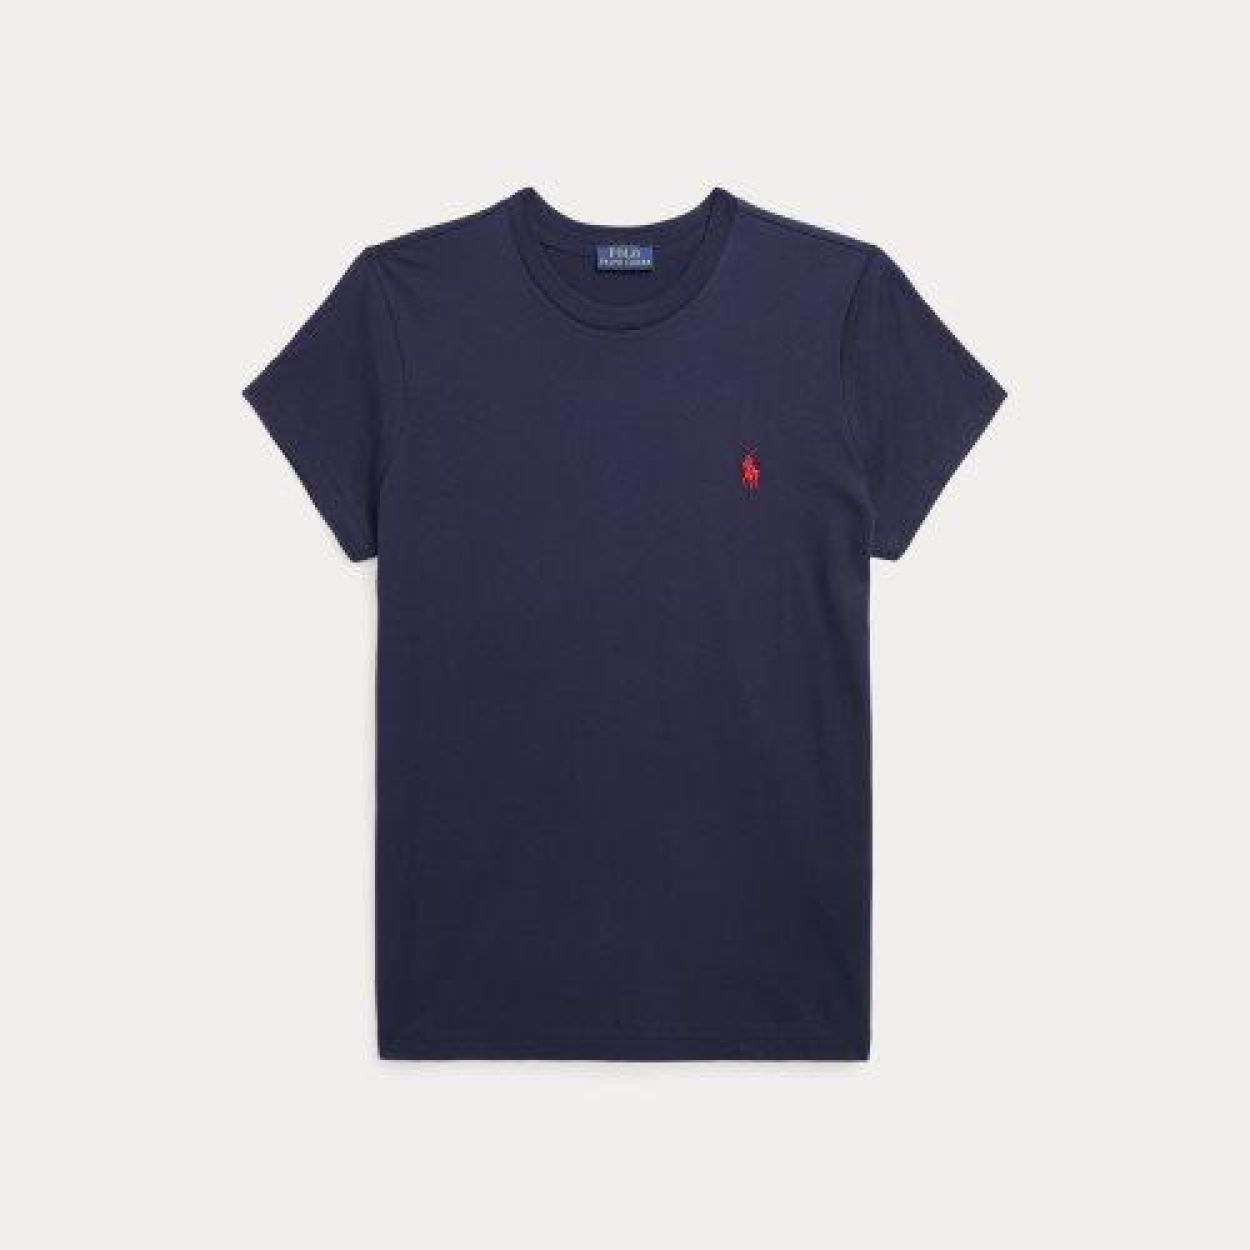 Ralph Lauren T-shirt Blauw  (211898698006/Blue) - Corylie (Roeselare)